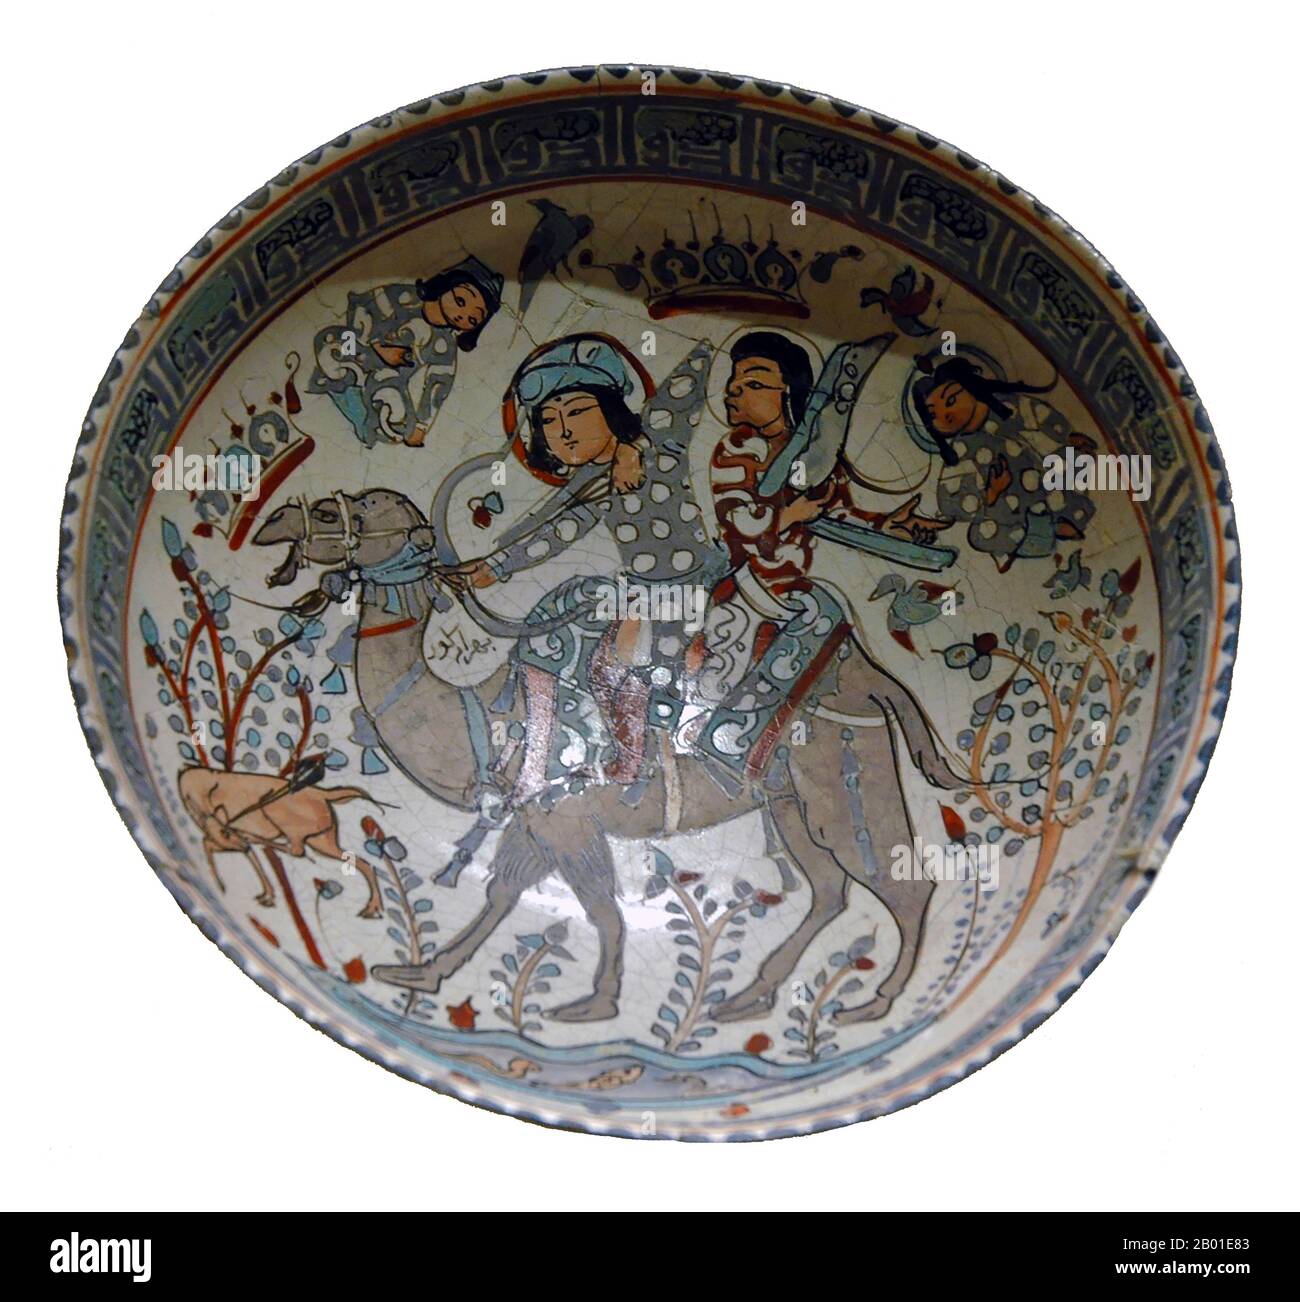 Iran/Persien: Bowling mit Bahram Gur (400-438), dem Helden des Shahnameh (Buch der Könige), und dem Harfen Azada, der auf einem Bactrianischen Kamel auf der Jagd reitet. Teller-Malerei, 12.-13. Jahrhundert. Bahram V war der vierzehnte Sassanid Shahanshah (König der Könige) von Persien (r. 421-438). Auch Bahram Gur oder Bahramgur genannt, war er ein Sohn von Yazdegerd I. nach dessen plötzlichem Tod (oder Mord) gewann er mit Hilfe von Mundhir, der arabischen Dynastie von al-Hirah, die Krone gegen die Opposition der Grandeen. Bahram Gur ist ein großer Favorit in persischer Literatur und Poesie, mit zahlreichen Legenden in seinem Namen. Stockfoto